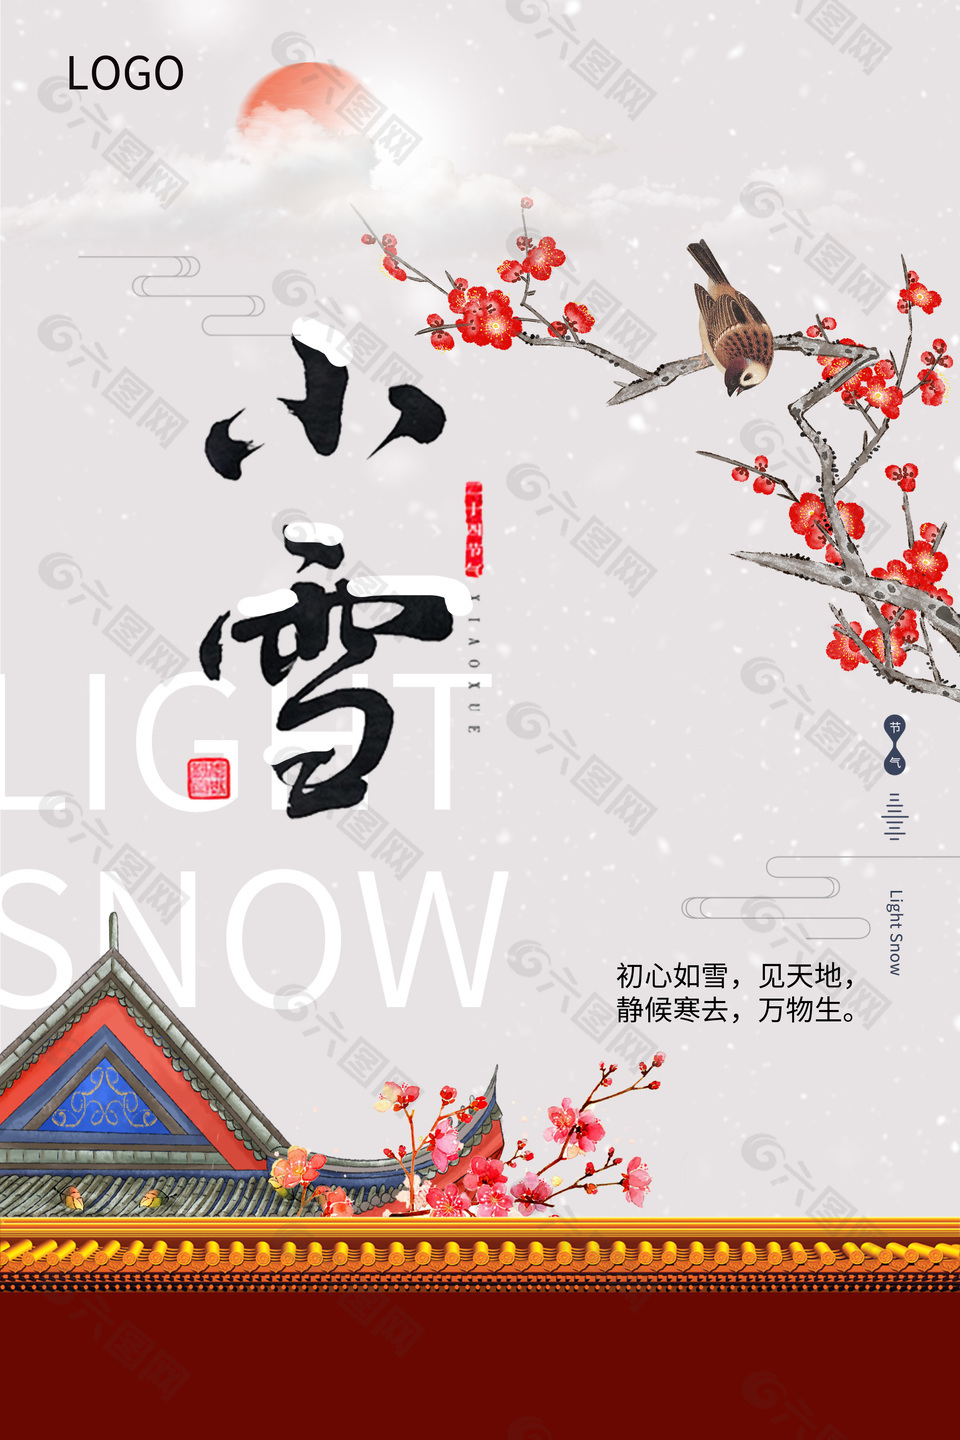 简约中式小雪节气宣传海报设计